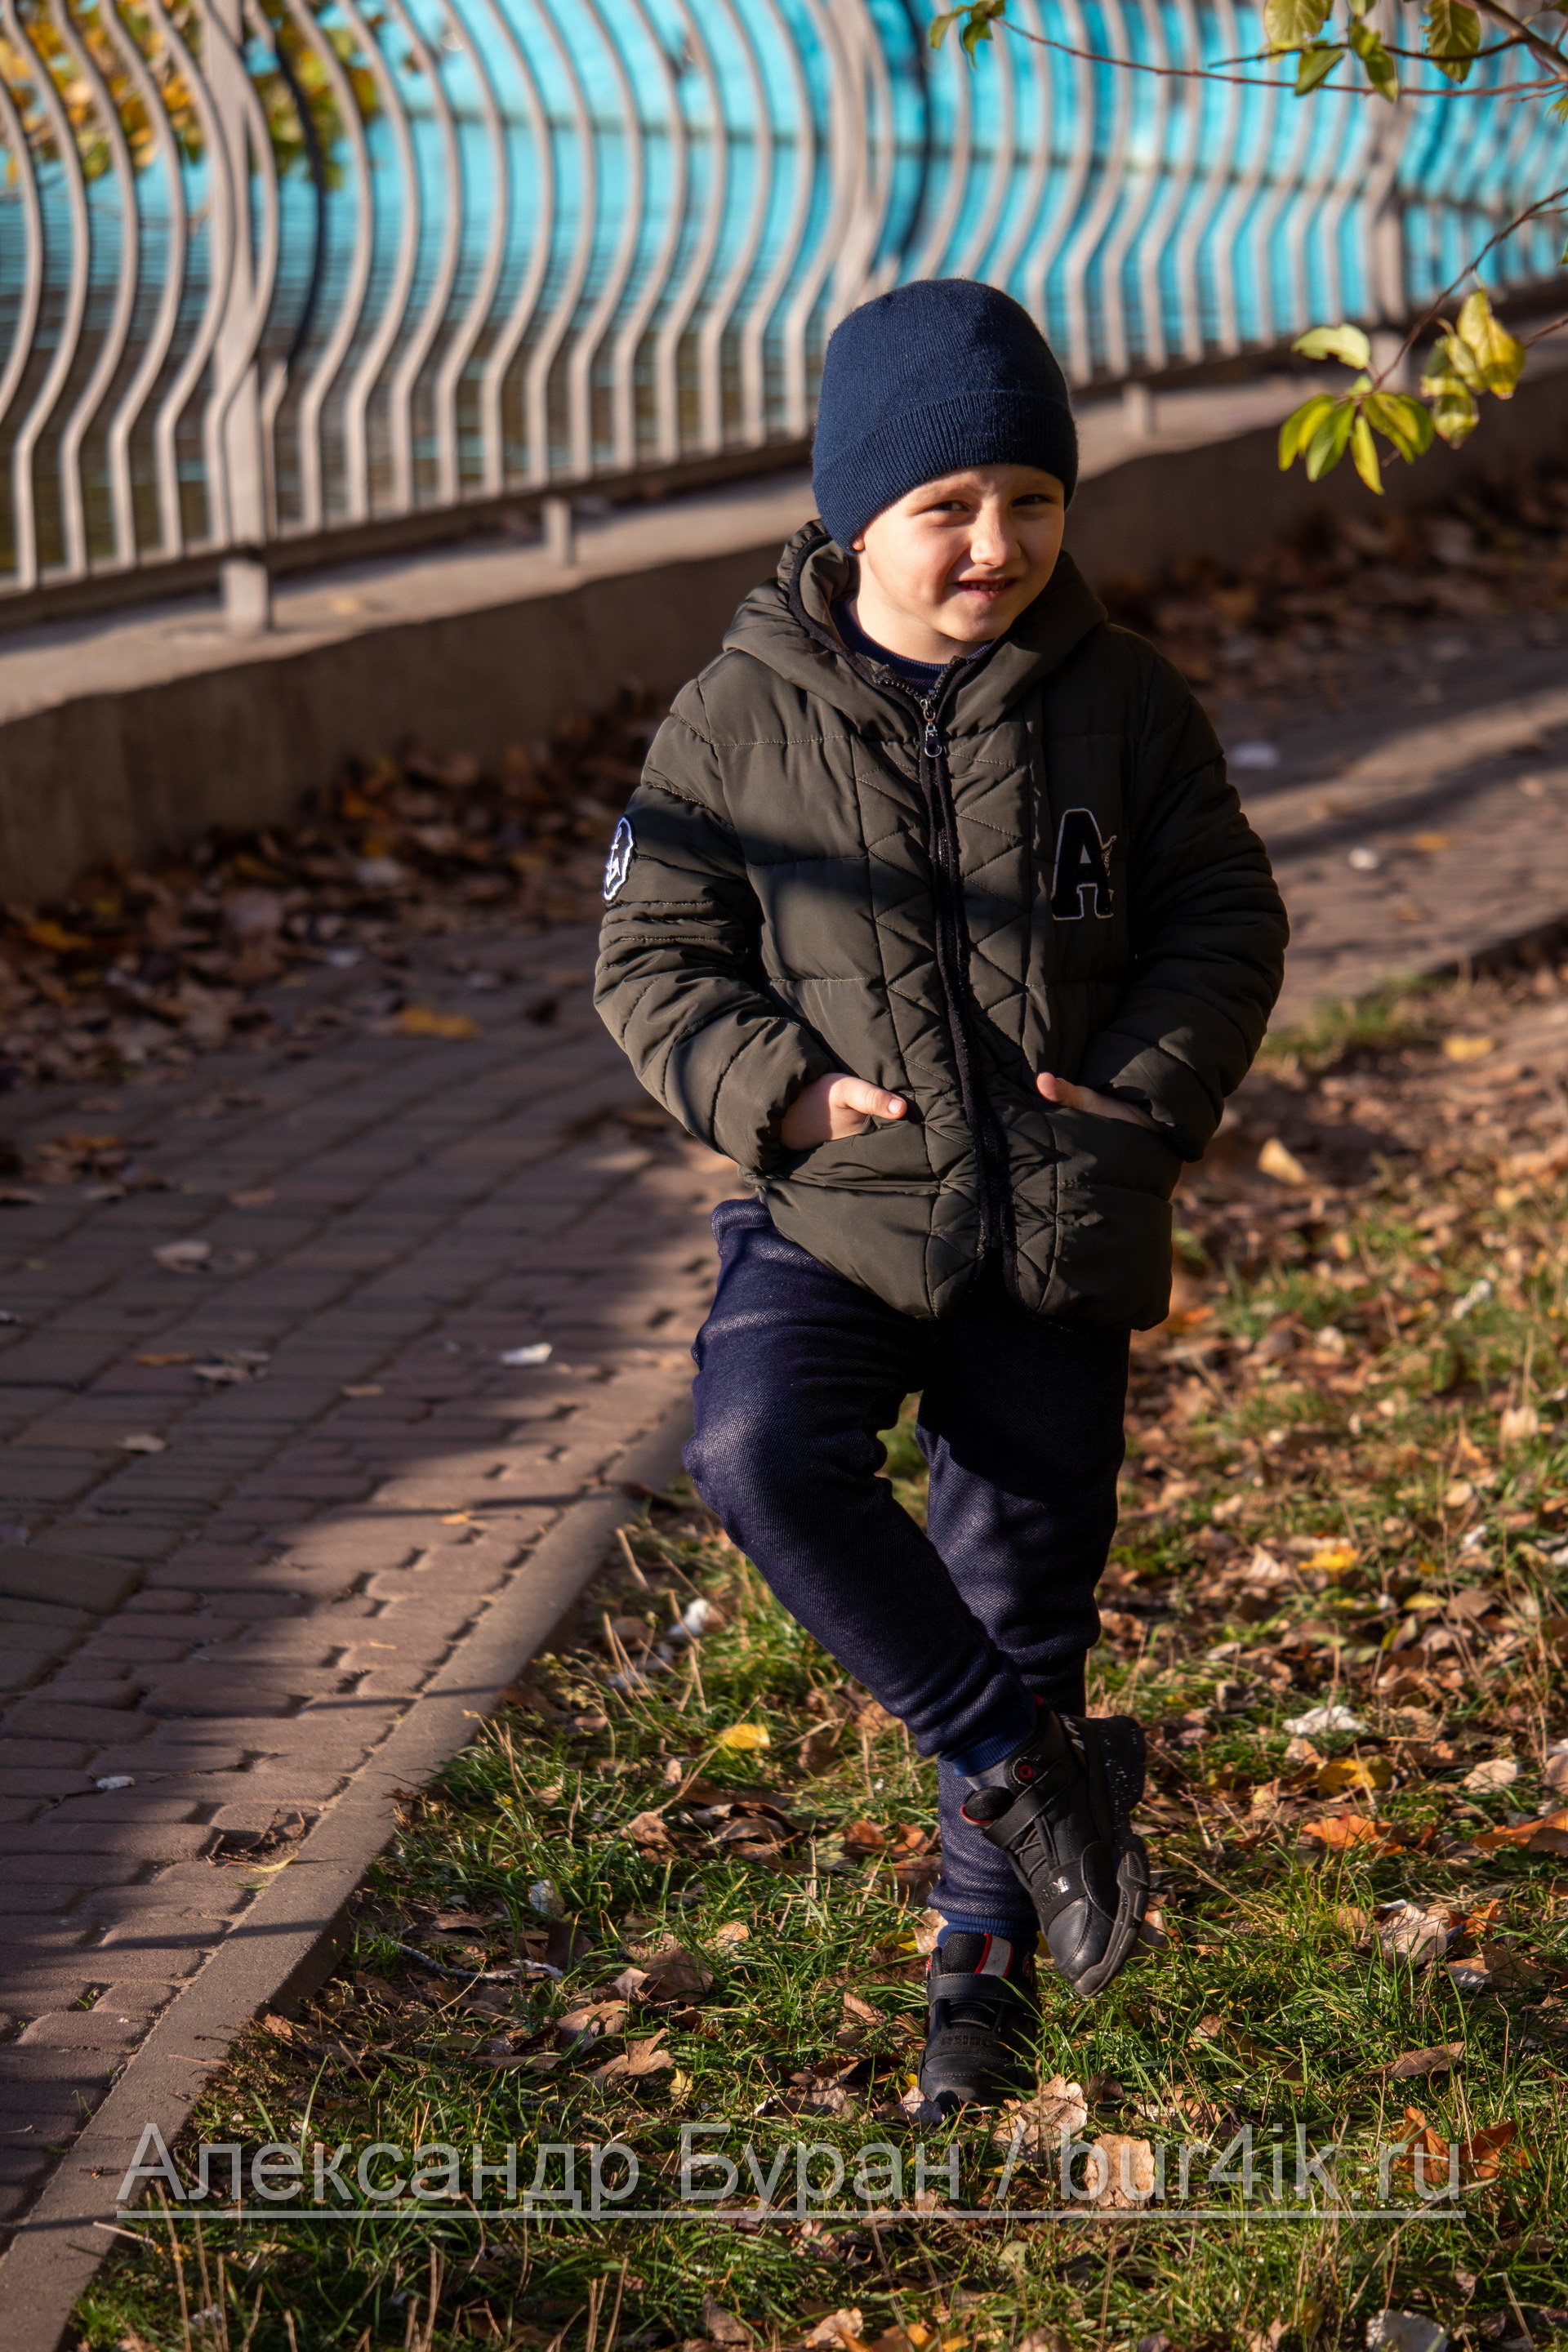 Мальчик фотографируется возле пруда в осеннем парке